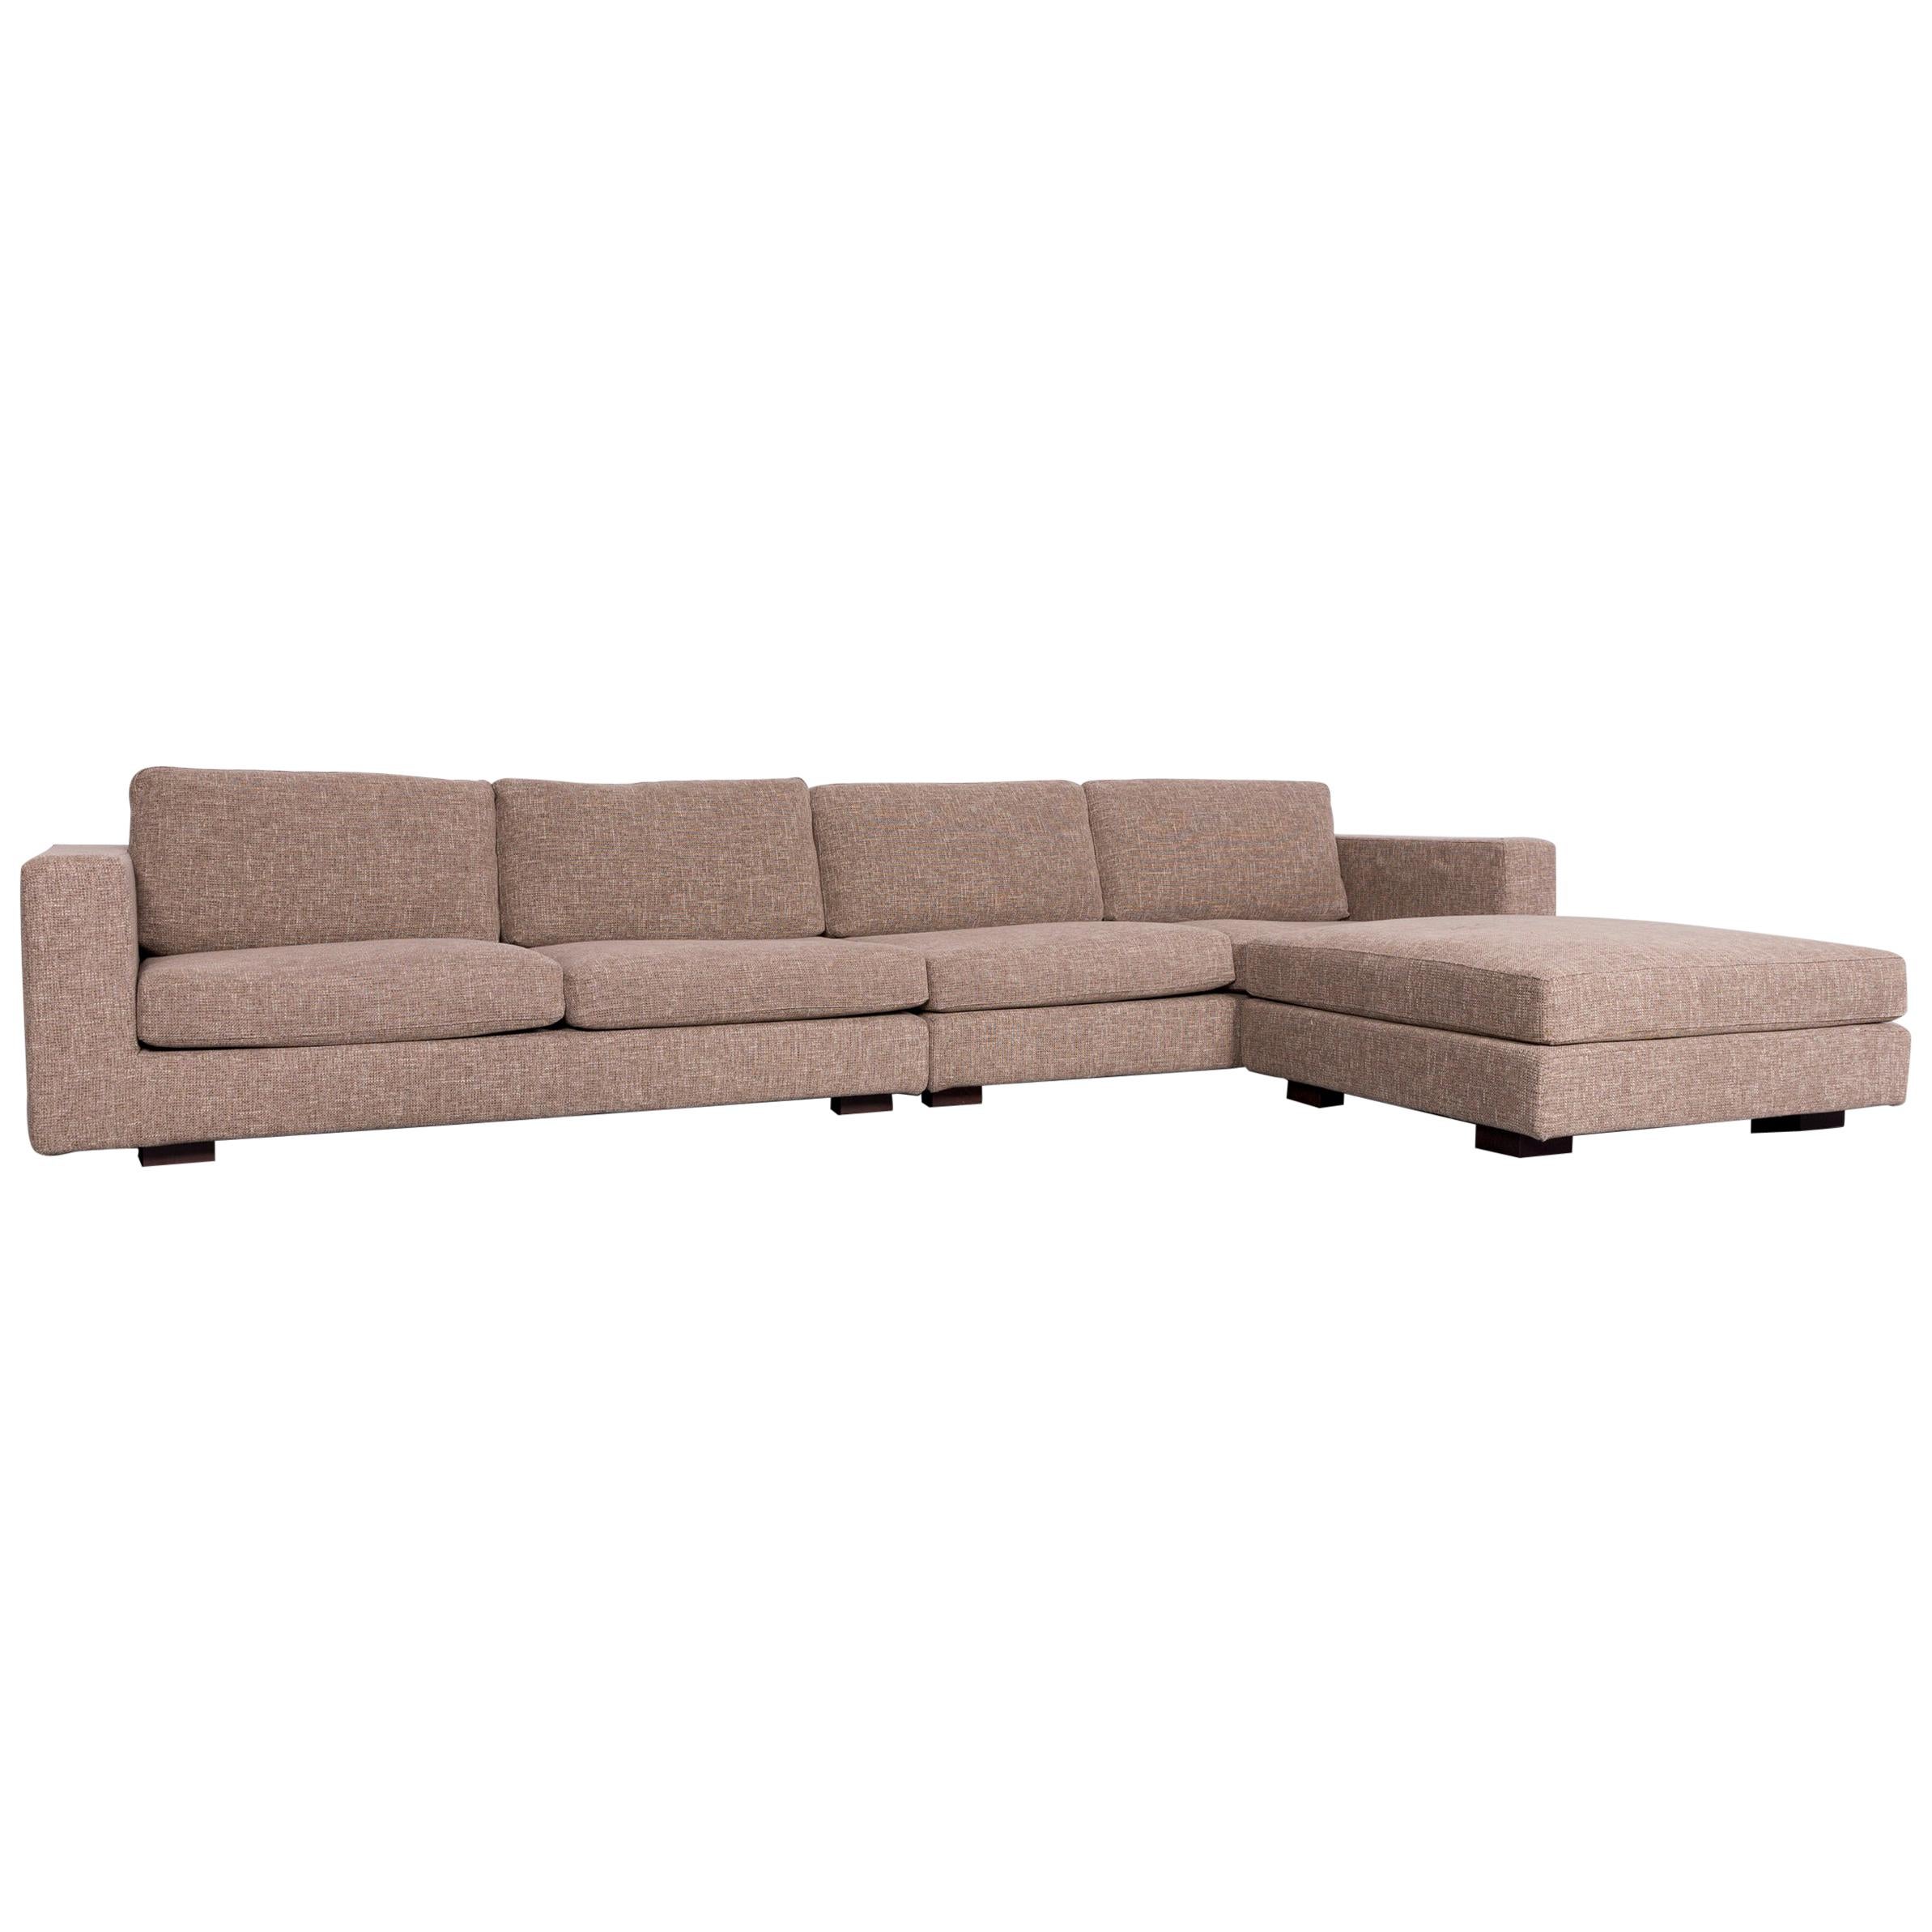 Minotti Hilton Designer Fabric Sofa Brown Corner Couch